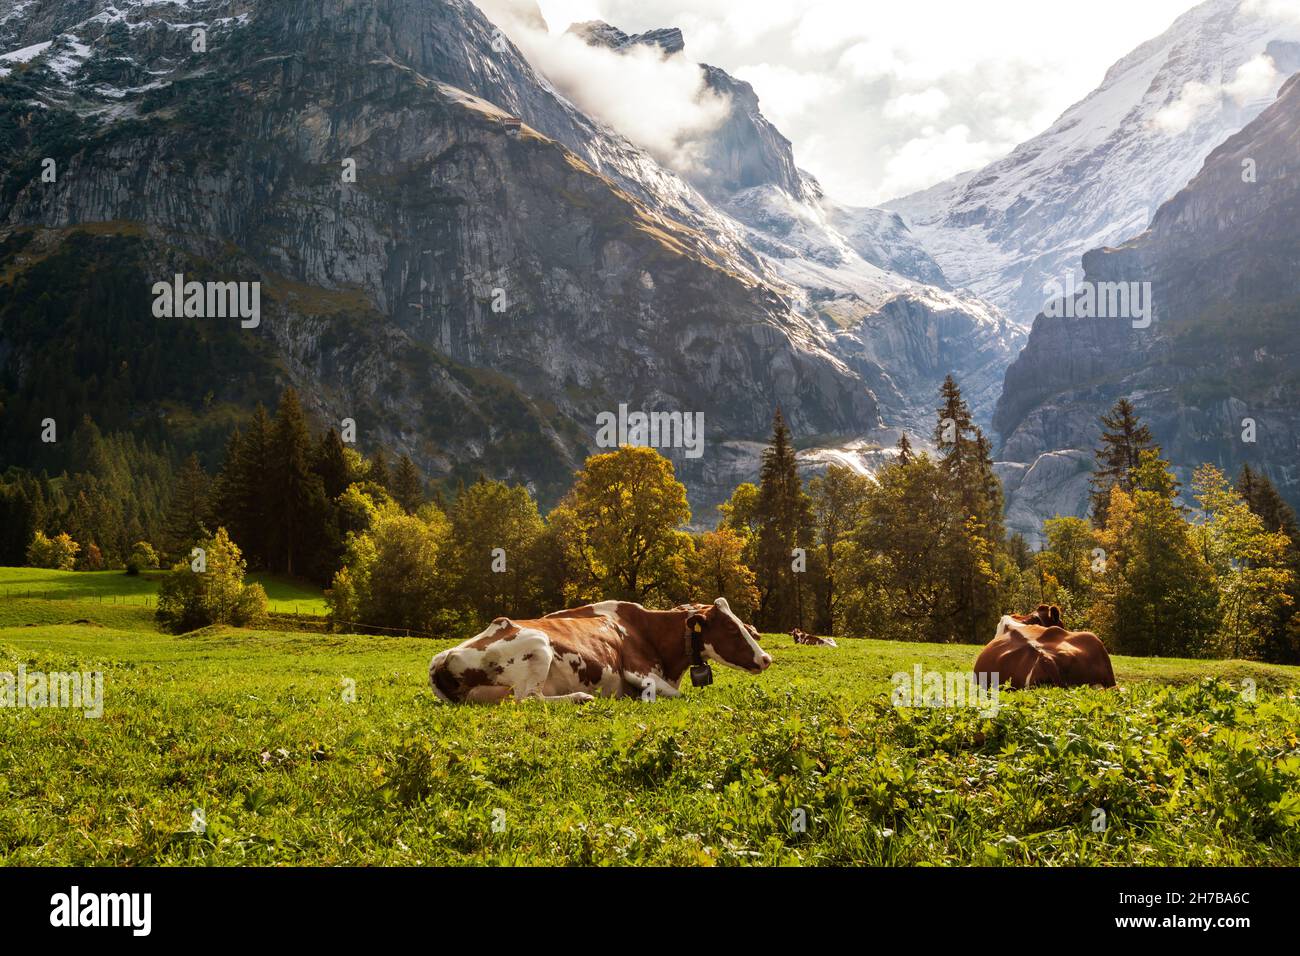 Die Kühe ruhen auf Auturmweiden, unterhalb des Oberen Grindelwaldgletschers im Berner Oberland in Grindelwald, Schweiz, in den frühen Morgensonnen. Stockfoto